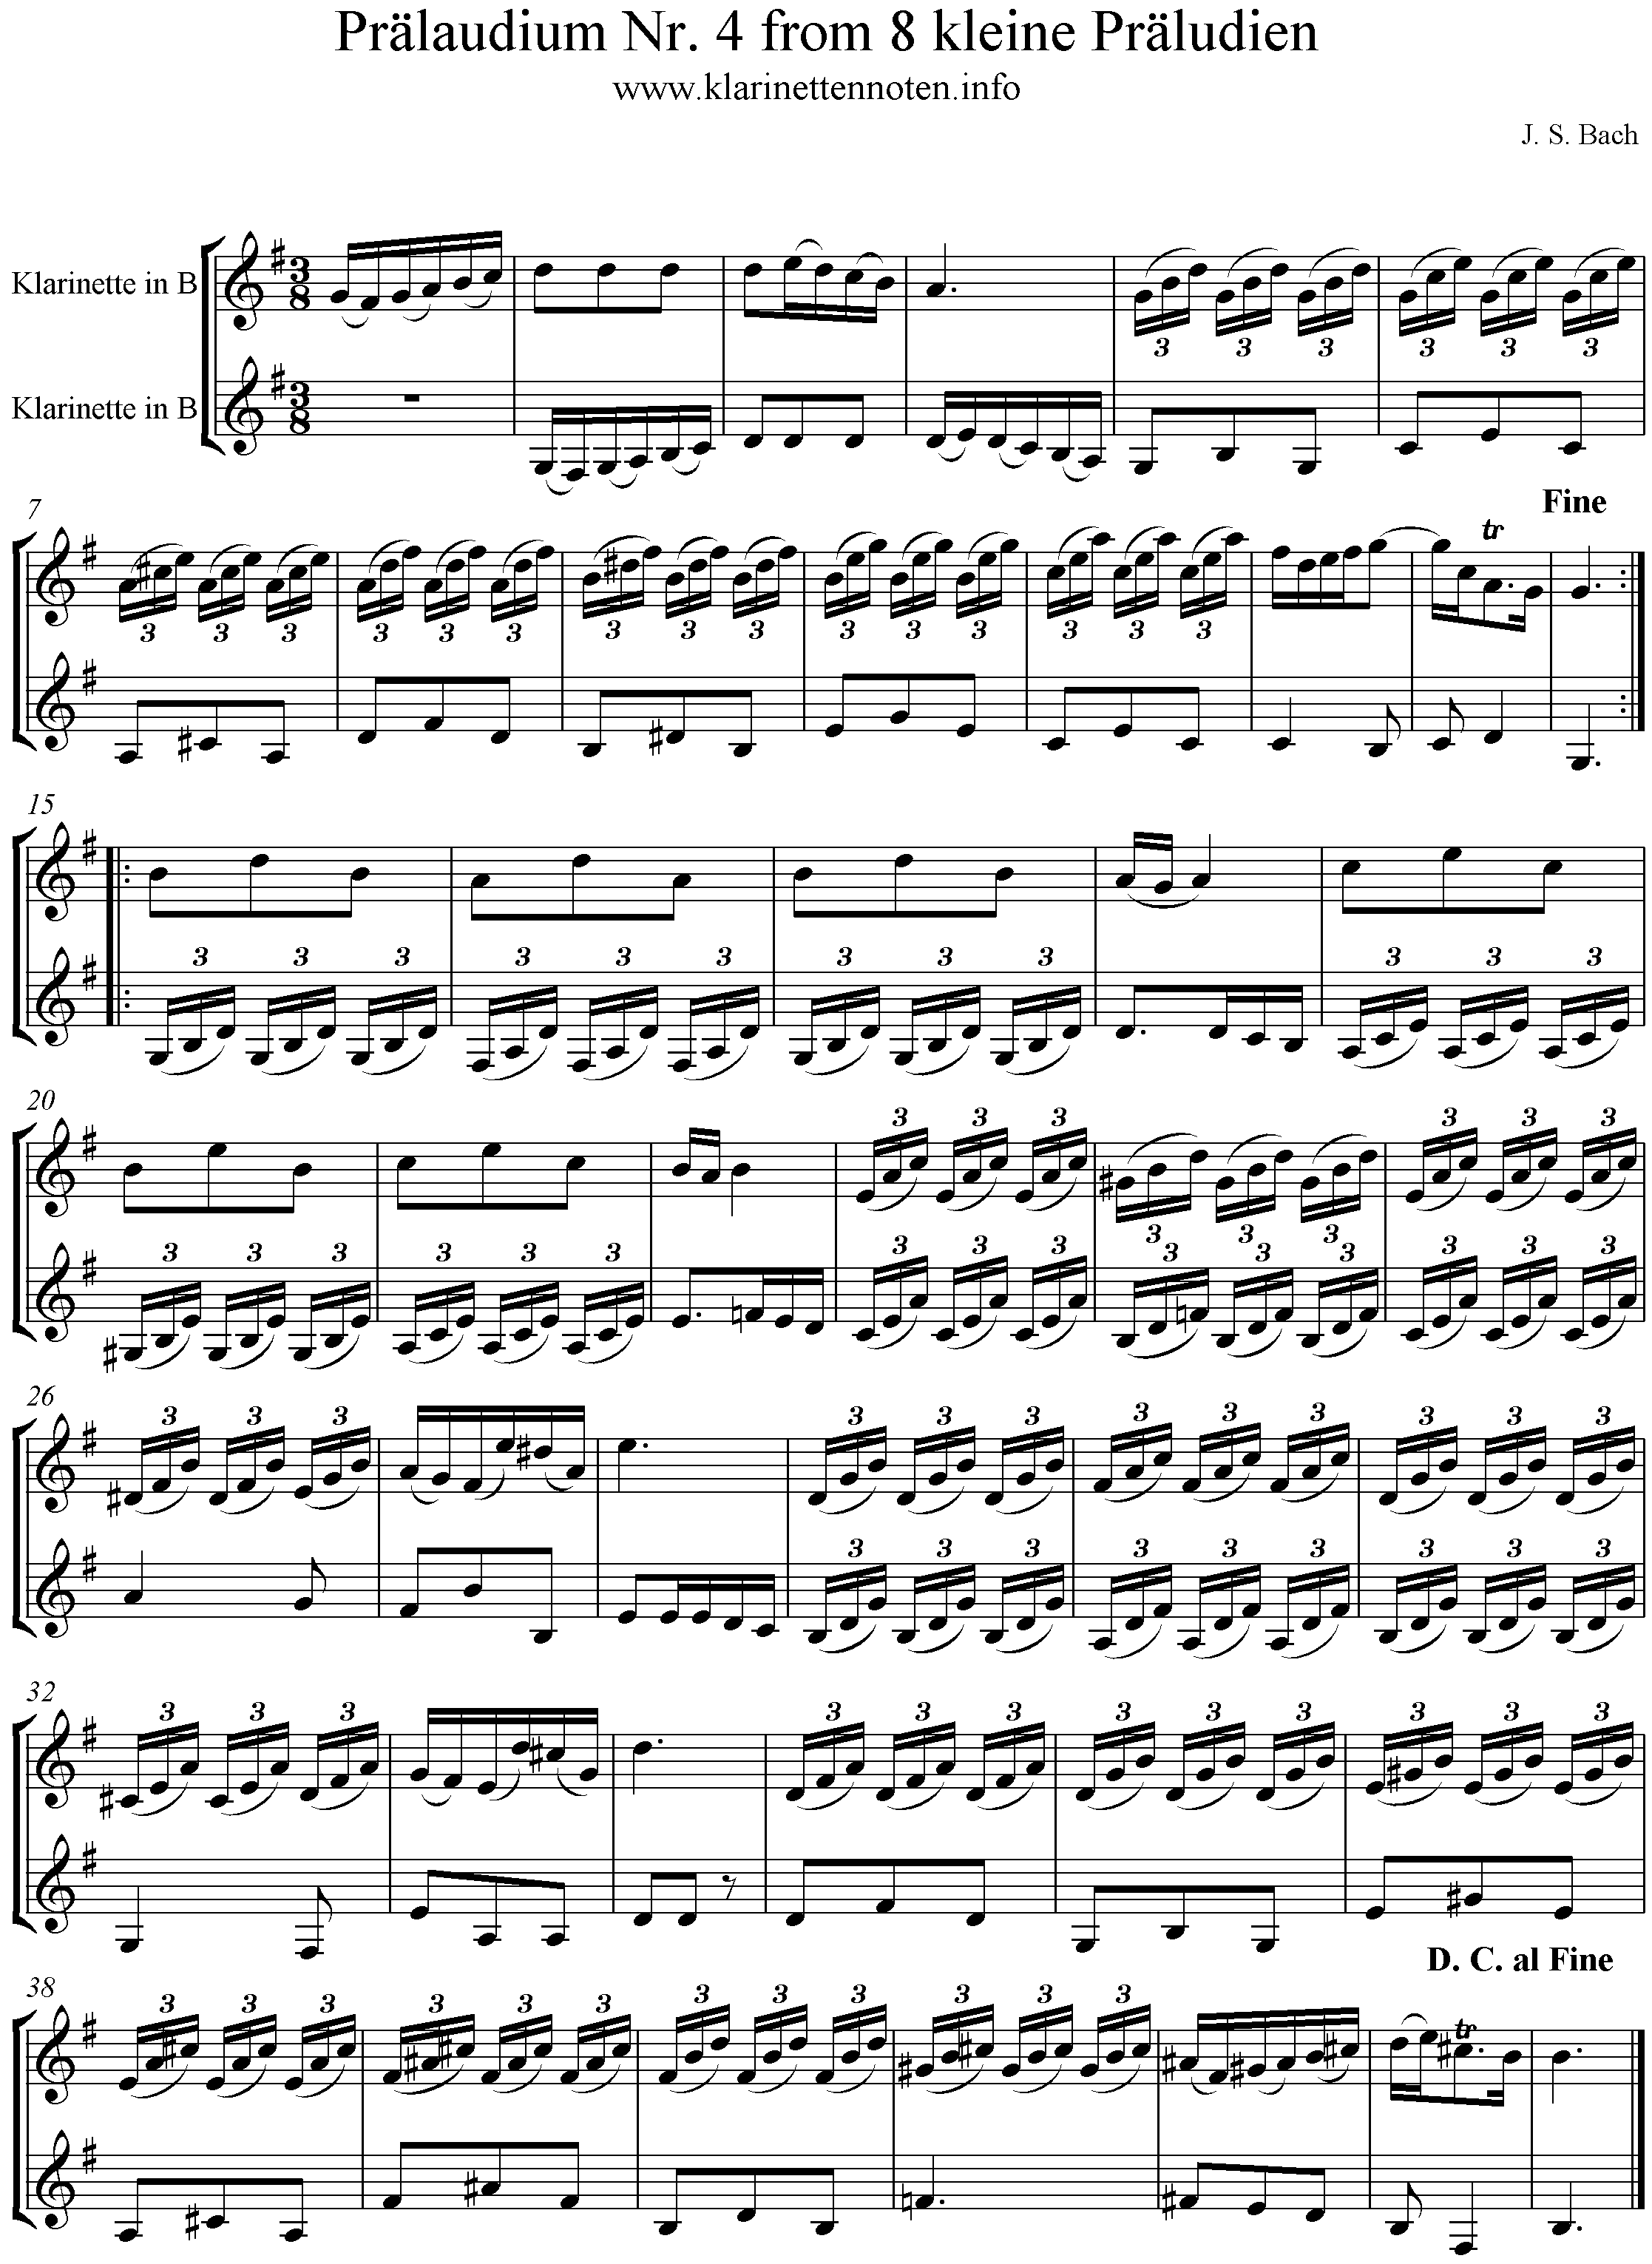 Noten Prläludium in F, BWV 556, 8 kleine Präludien